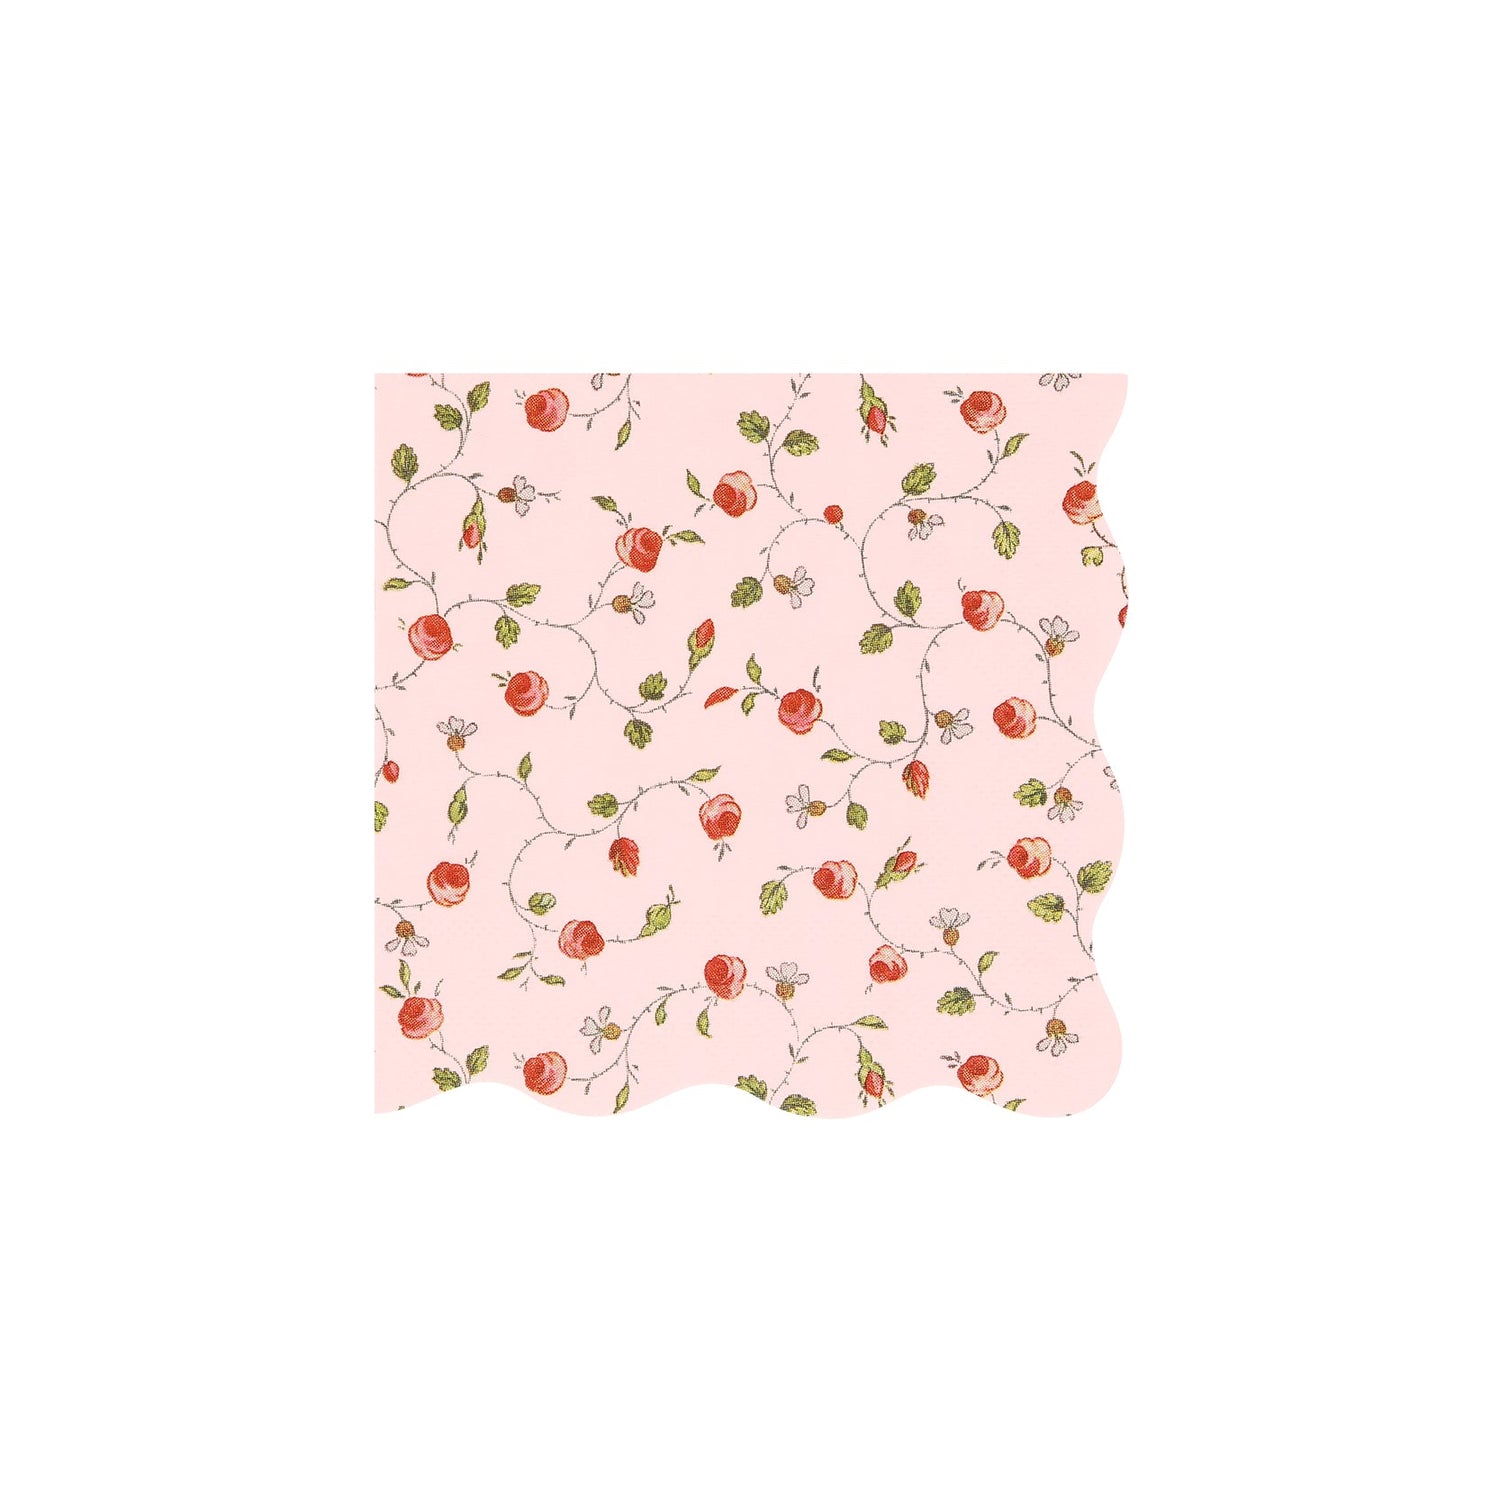 A pink Meri Meri Laduree Marie-Antoinette paper napkin with a floral pattern.